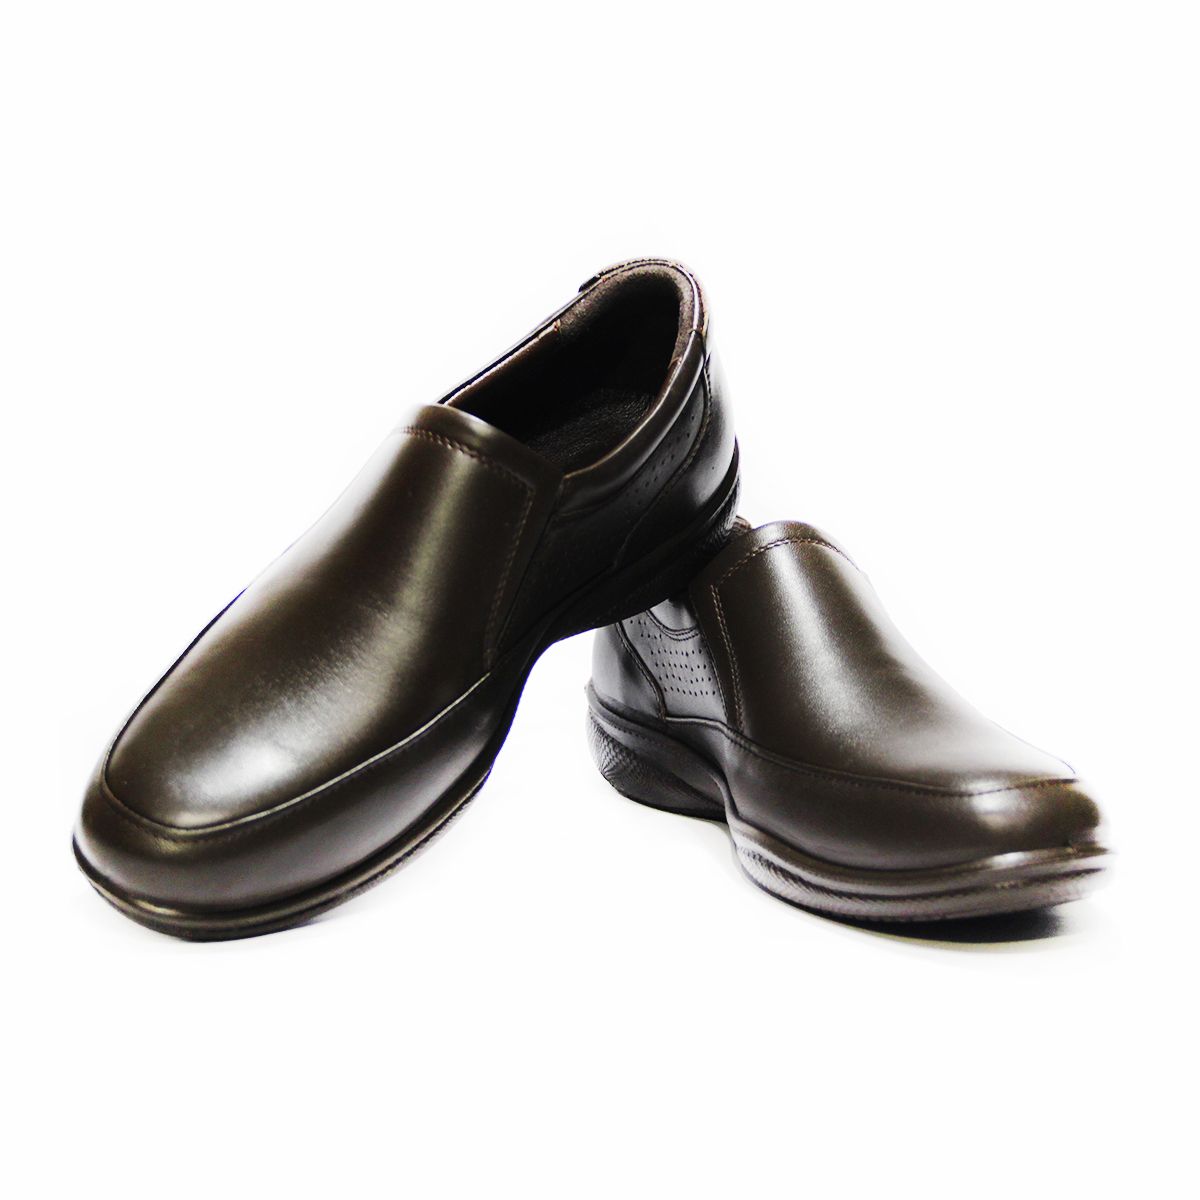 کفش روزمره مردانه فرزین کد TKB 0021 رنگ قهوه ای -  - 2